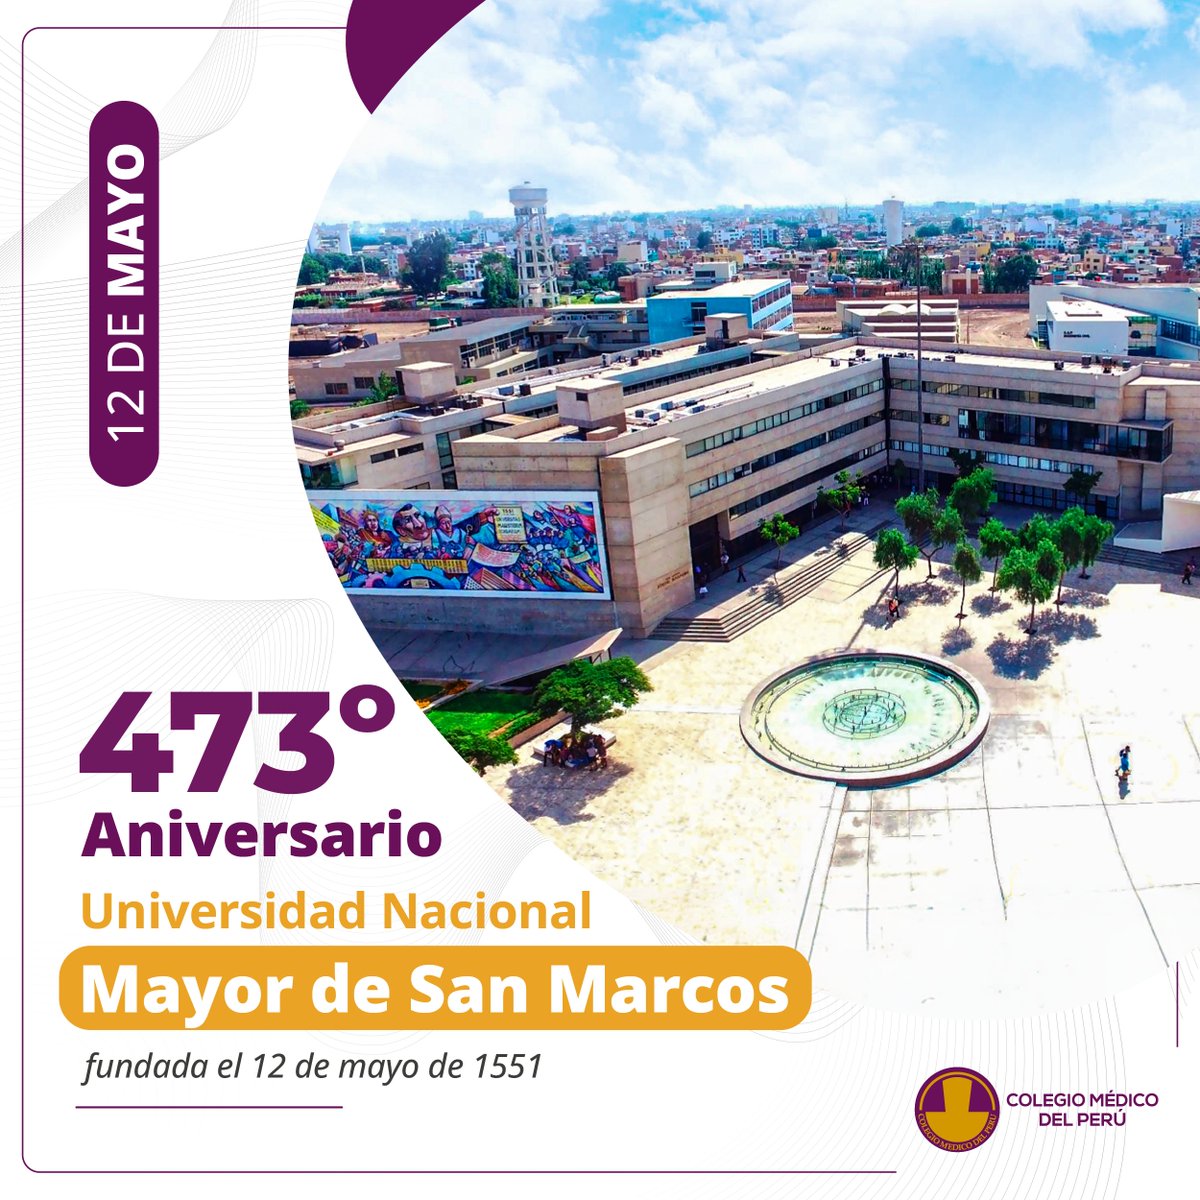 🗓#EFEMÉRIDES | El Colegio Médico del Perú hace extensivo su saludo a la Universidad Nacional Mayor de San Marcos (UNMSM), que hoy celebra su 473 aniversario de creación.